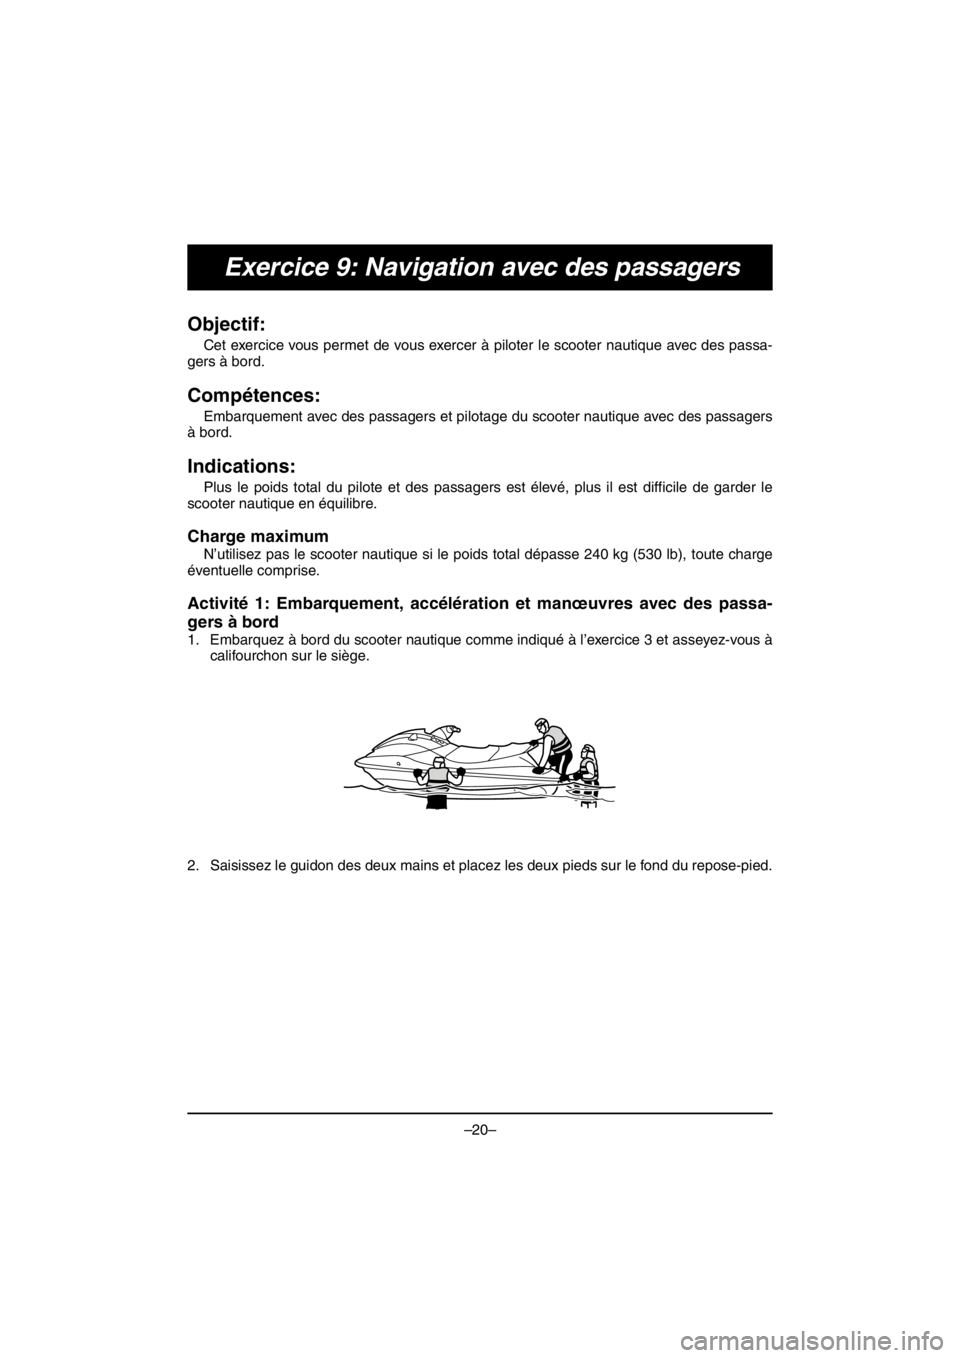 YAMAHA V1 2016  Manuale duso (in Italian) –20–
Exercice 9: Navigation avec des passagers
Objectif: 
Cet exercice vous permet de vous exercer à piloter le scooter nautique avec des passa-
gers à bord.
Compétences: 
Embarquement avec des